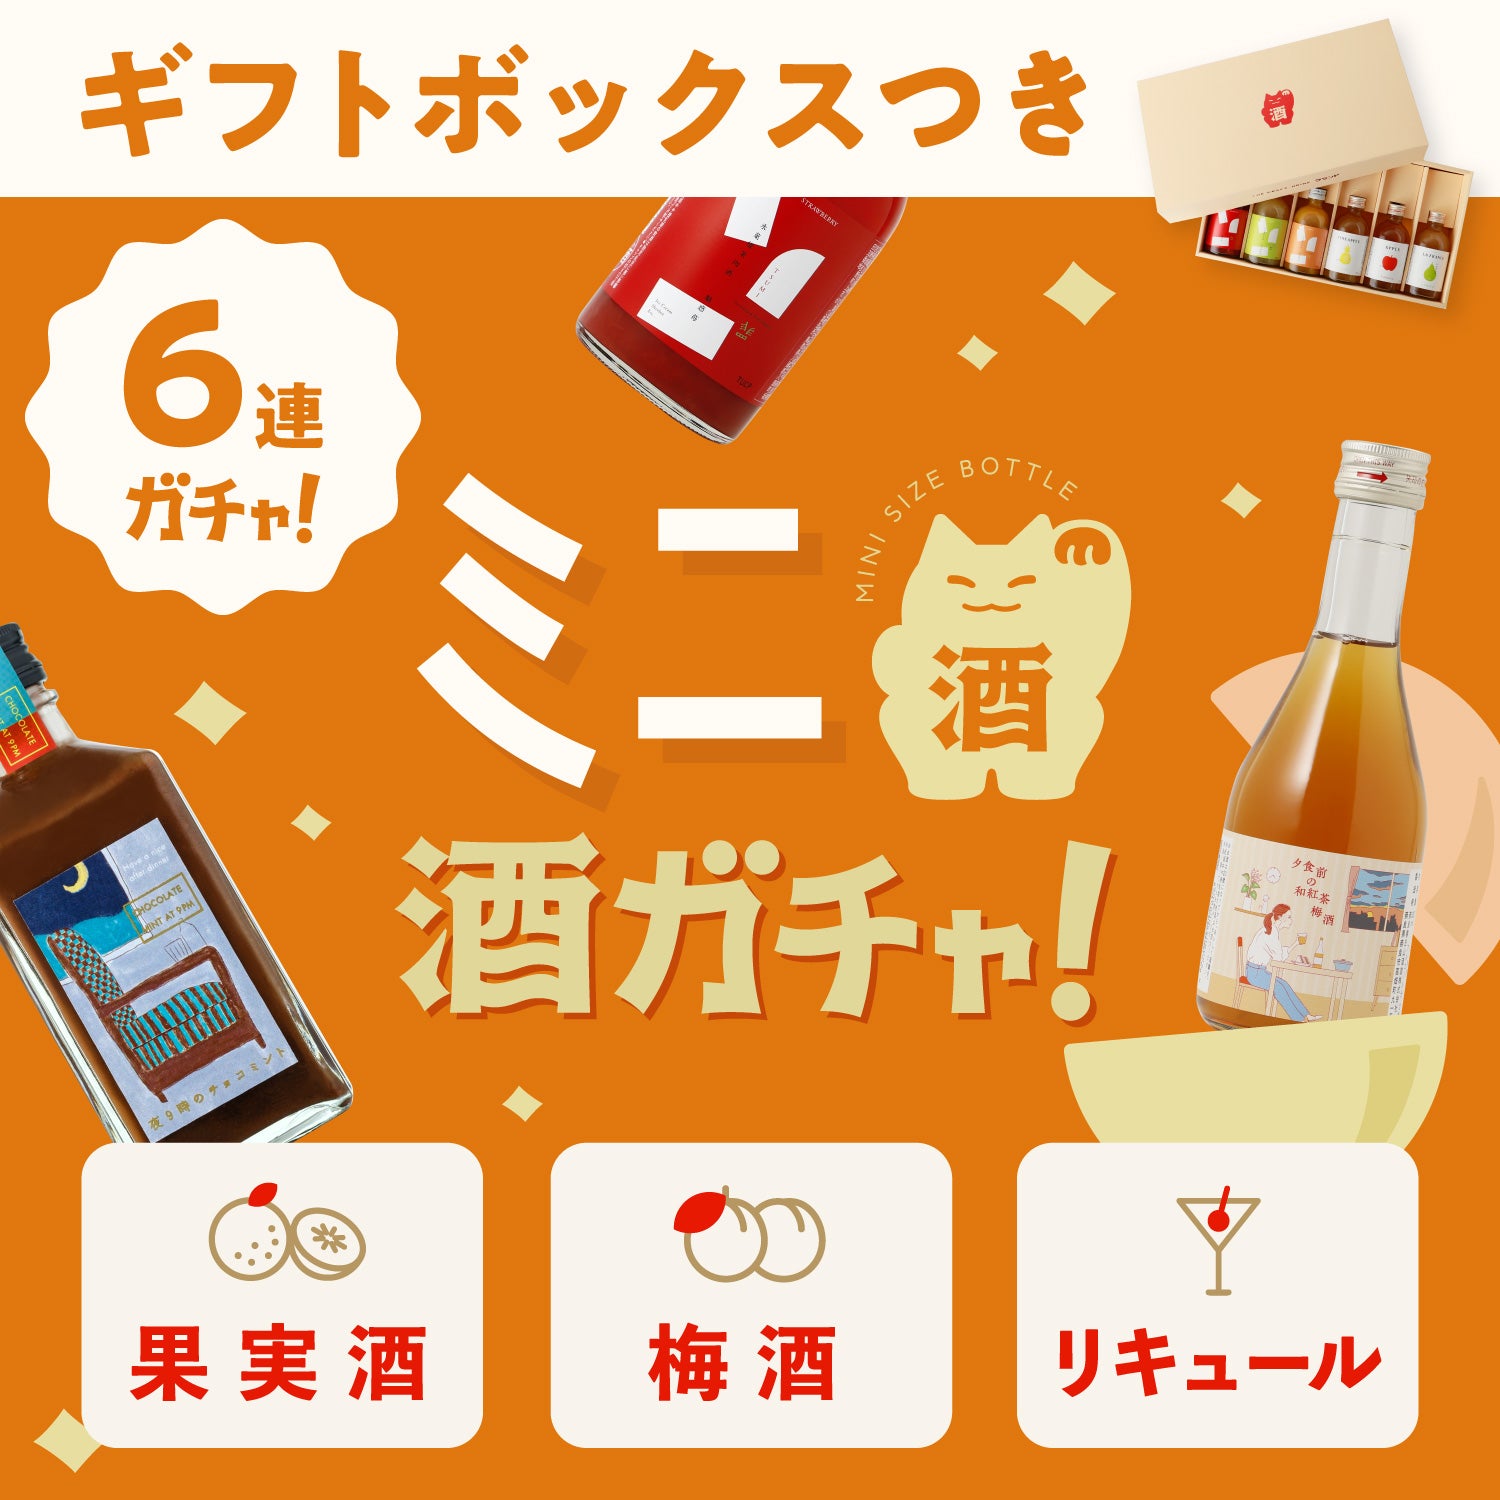 【ギフトボックス付き】ミニ6連酒ガチャ -果実酒・梅酒・リキュール-